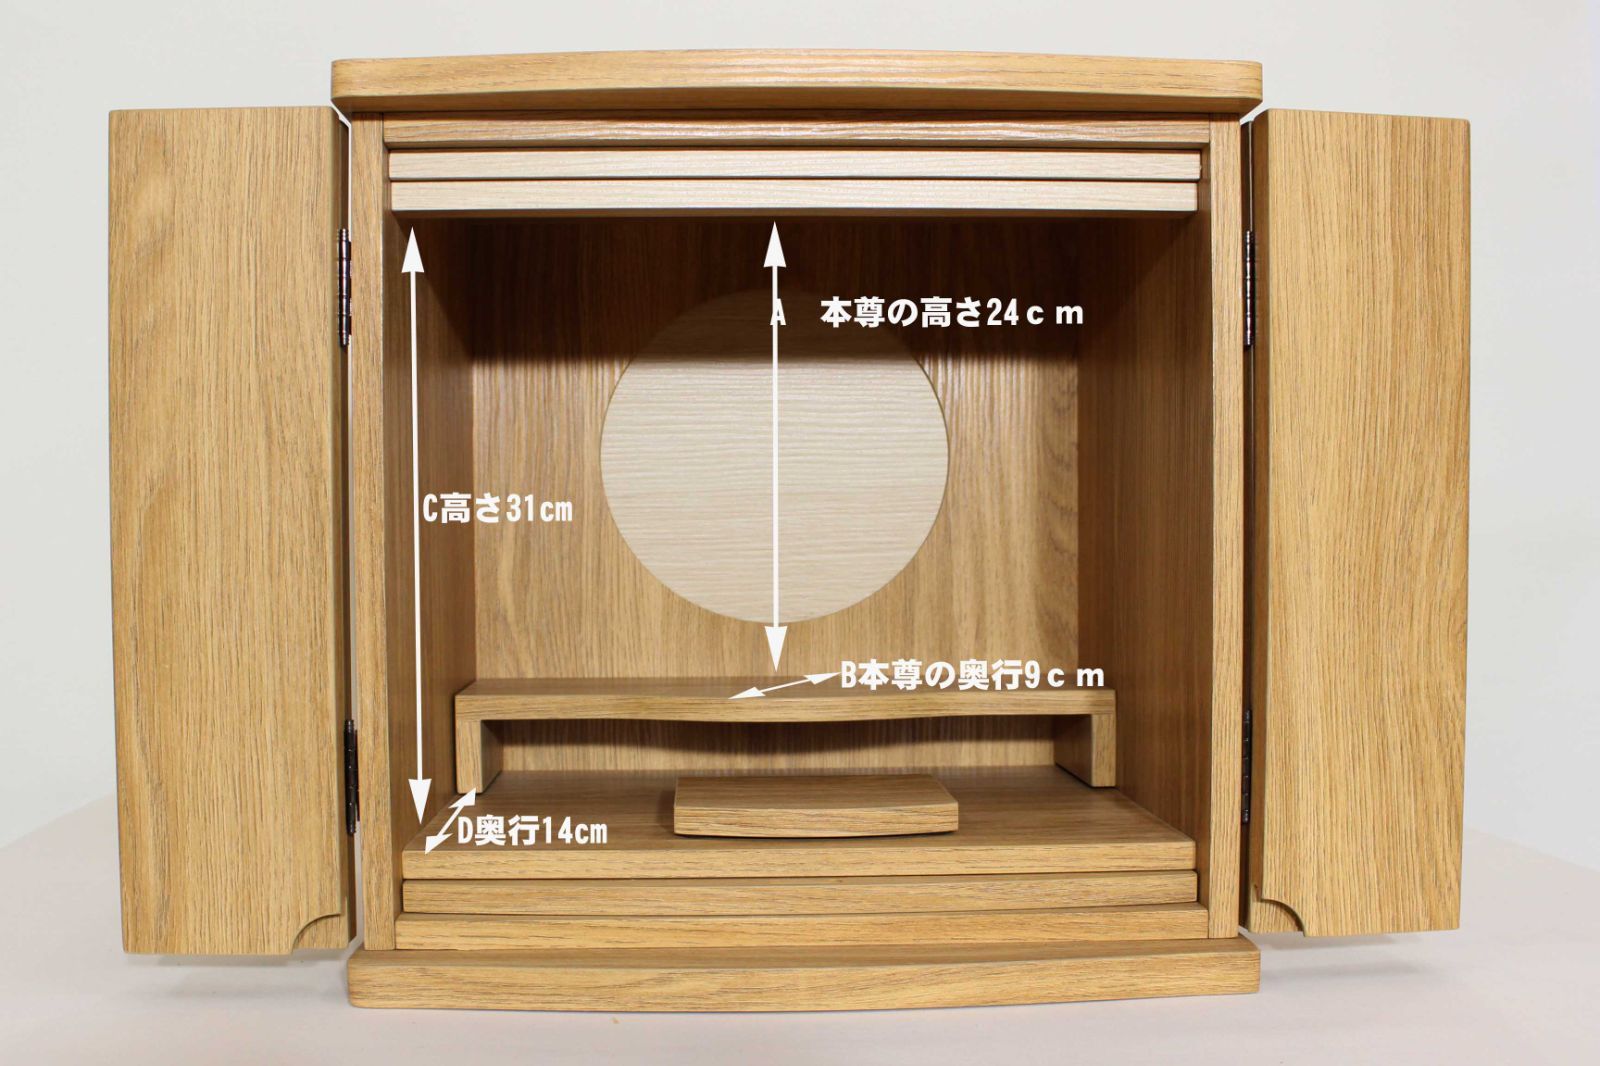 インテリア仏壇 仏壇 ミニサイズ ミニ仏壇 木製 インテリア家具